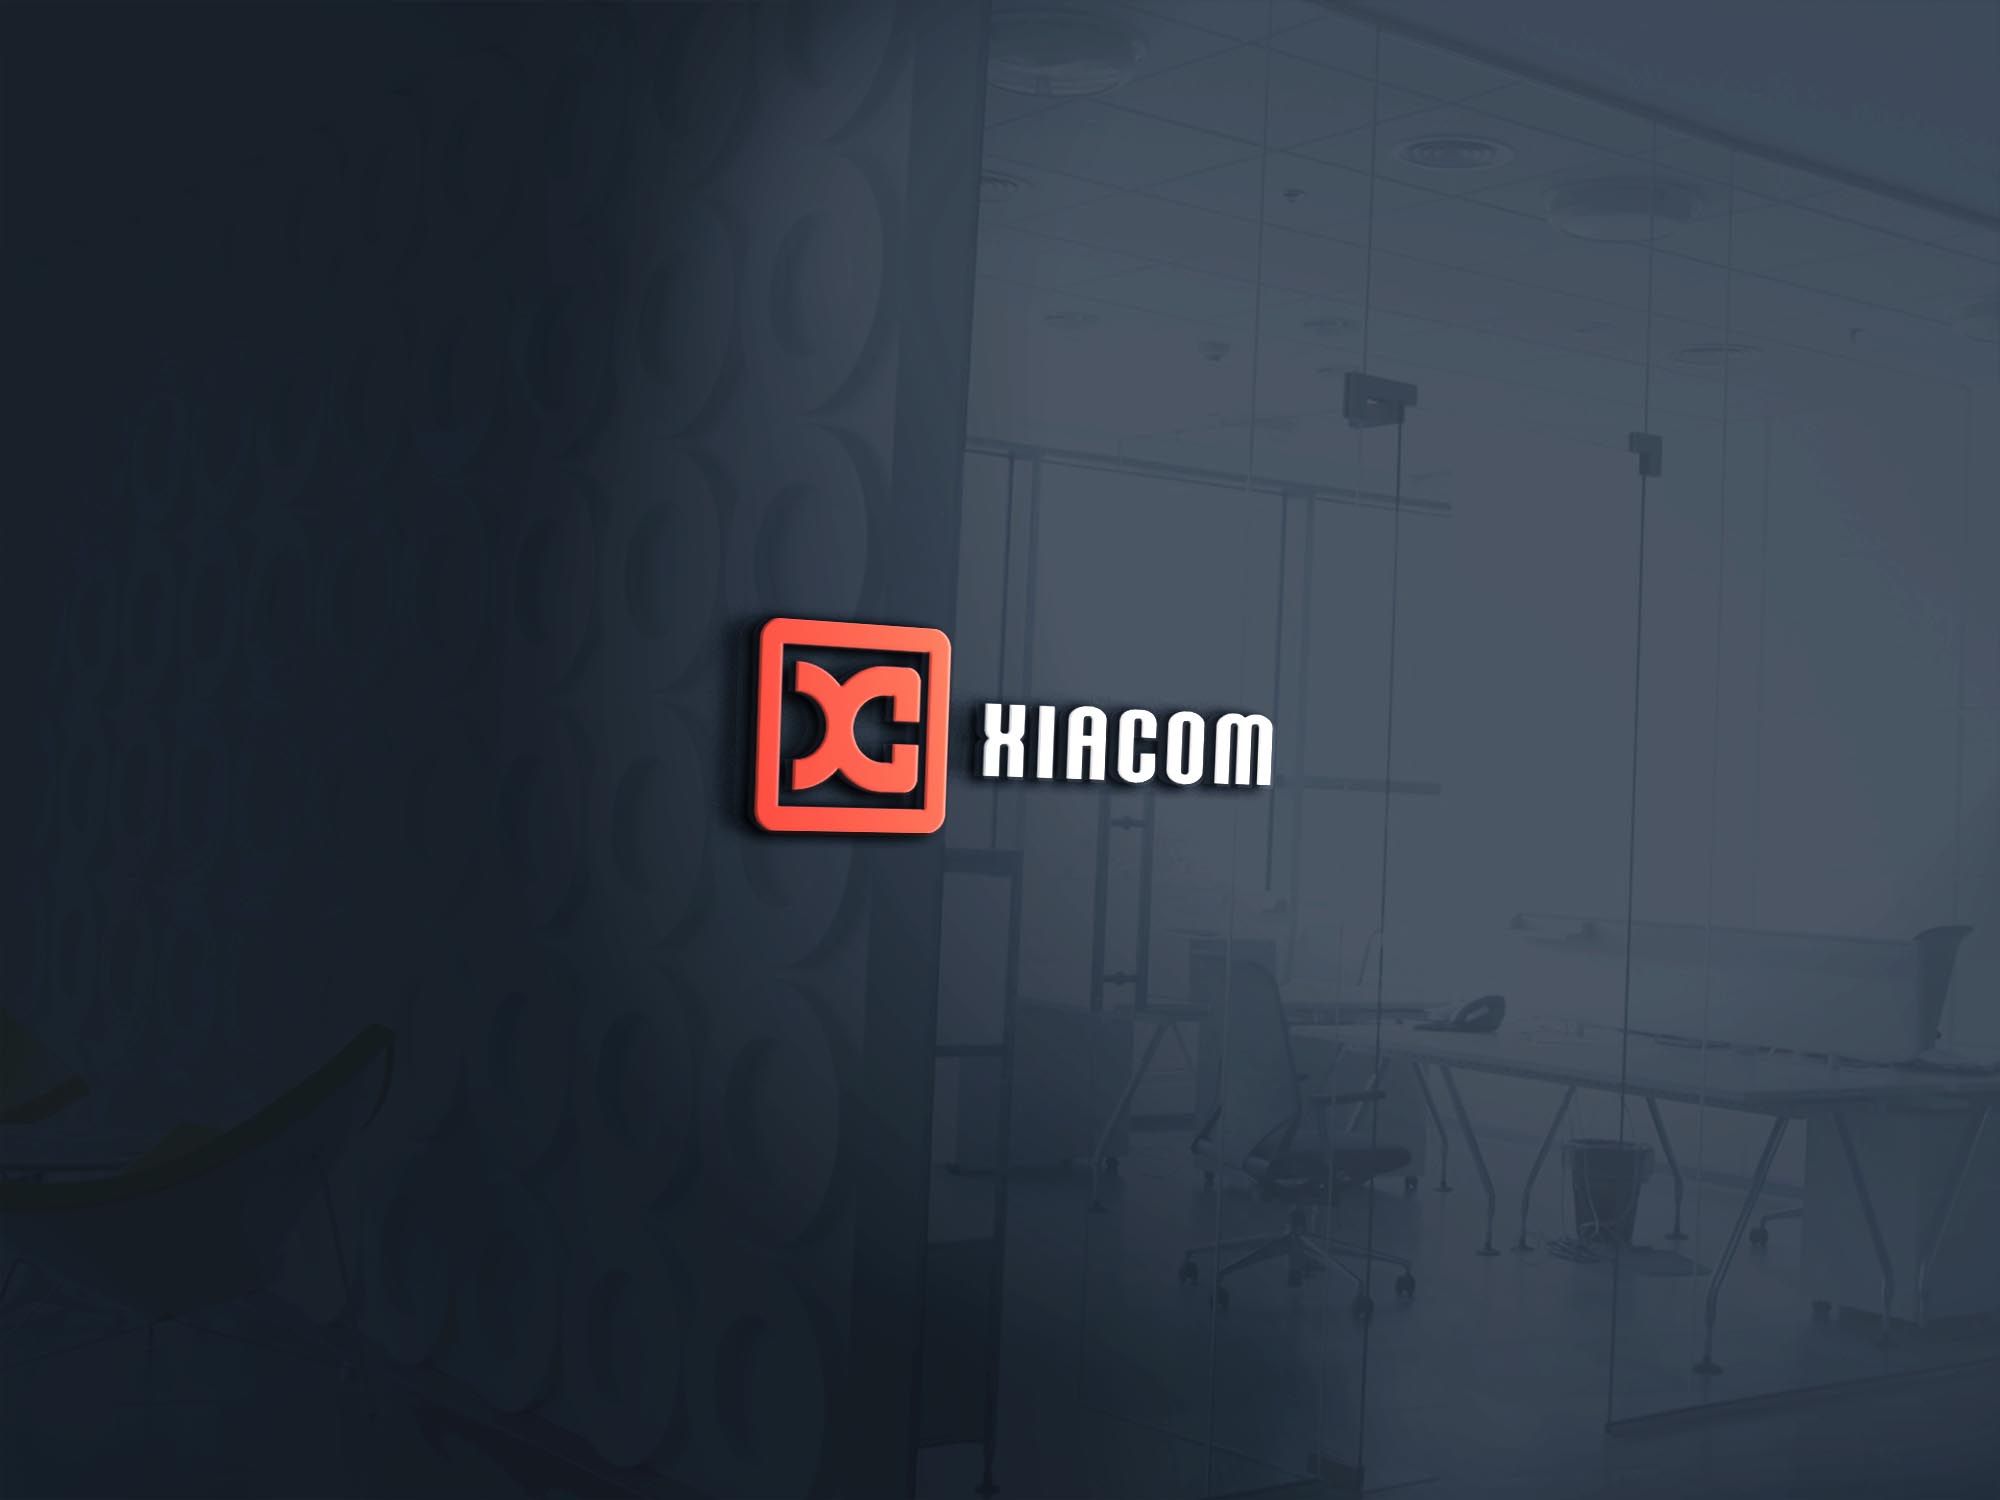 Логотип для Xiacom - дизайнер SmolinDenis